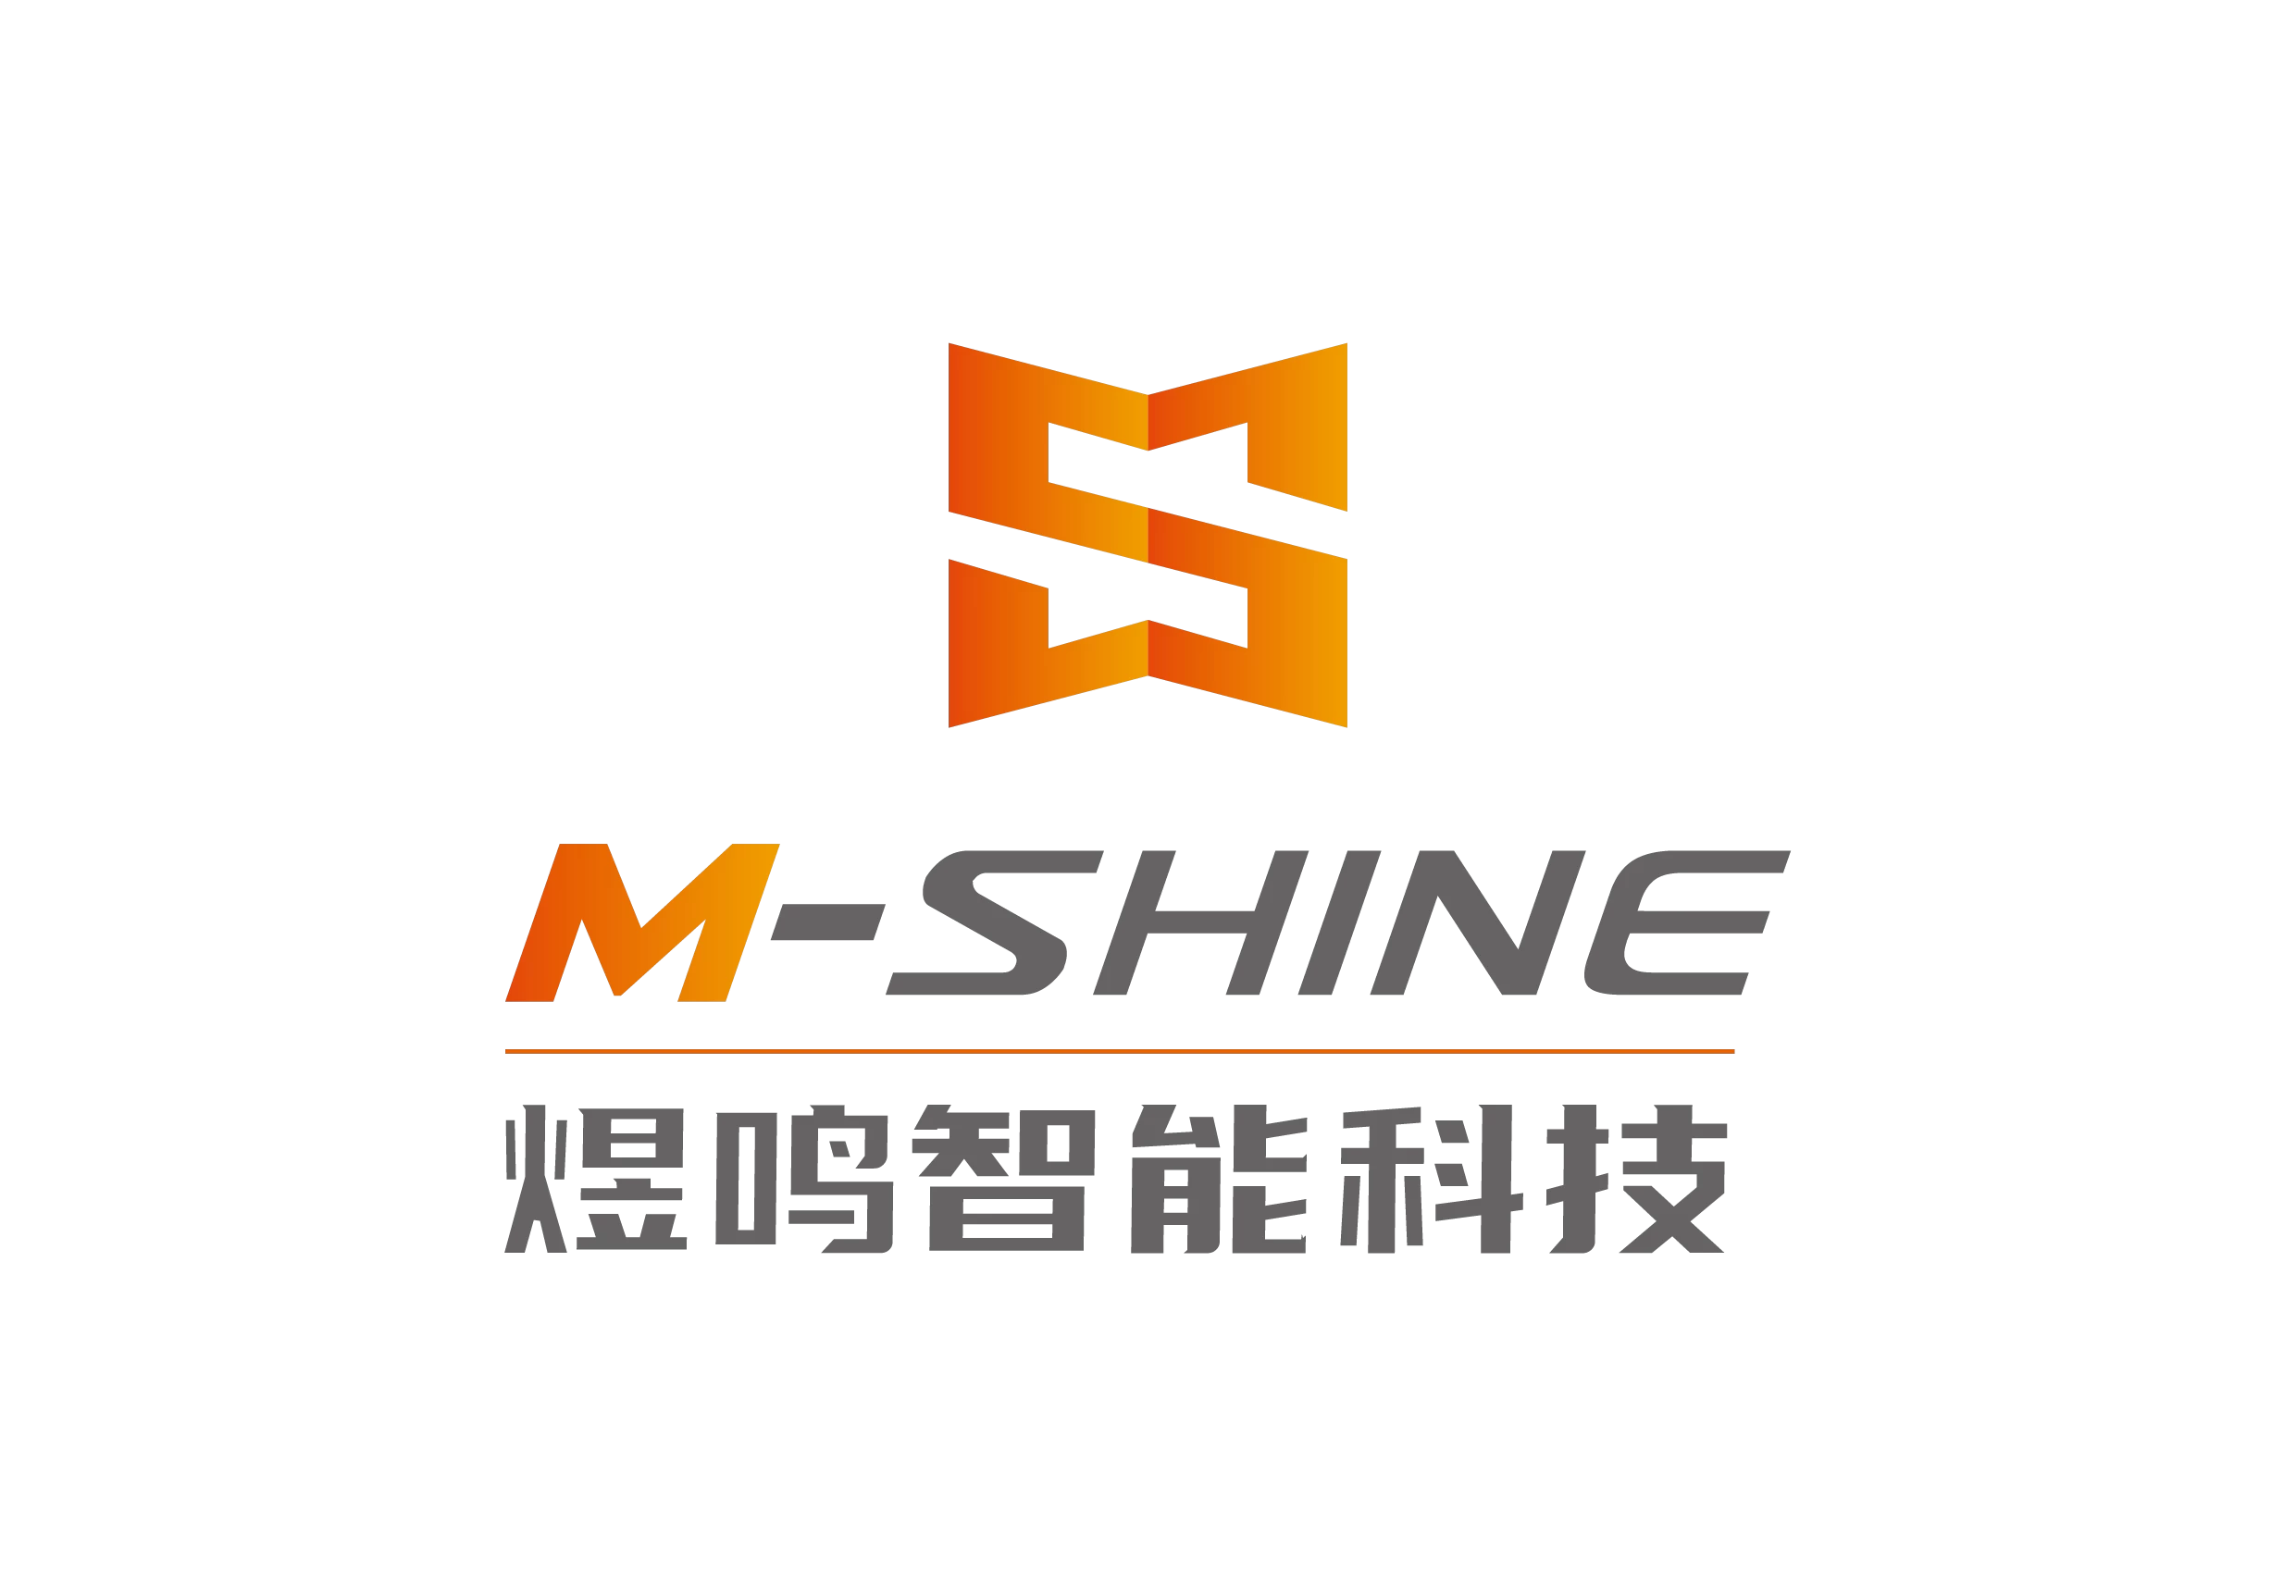 جينان m-shine التكنولوجيا المحدودة